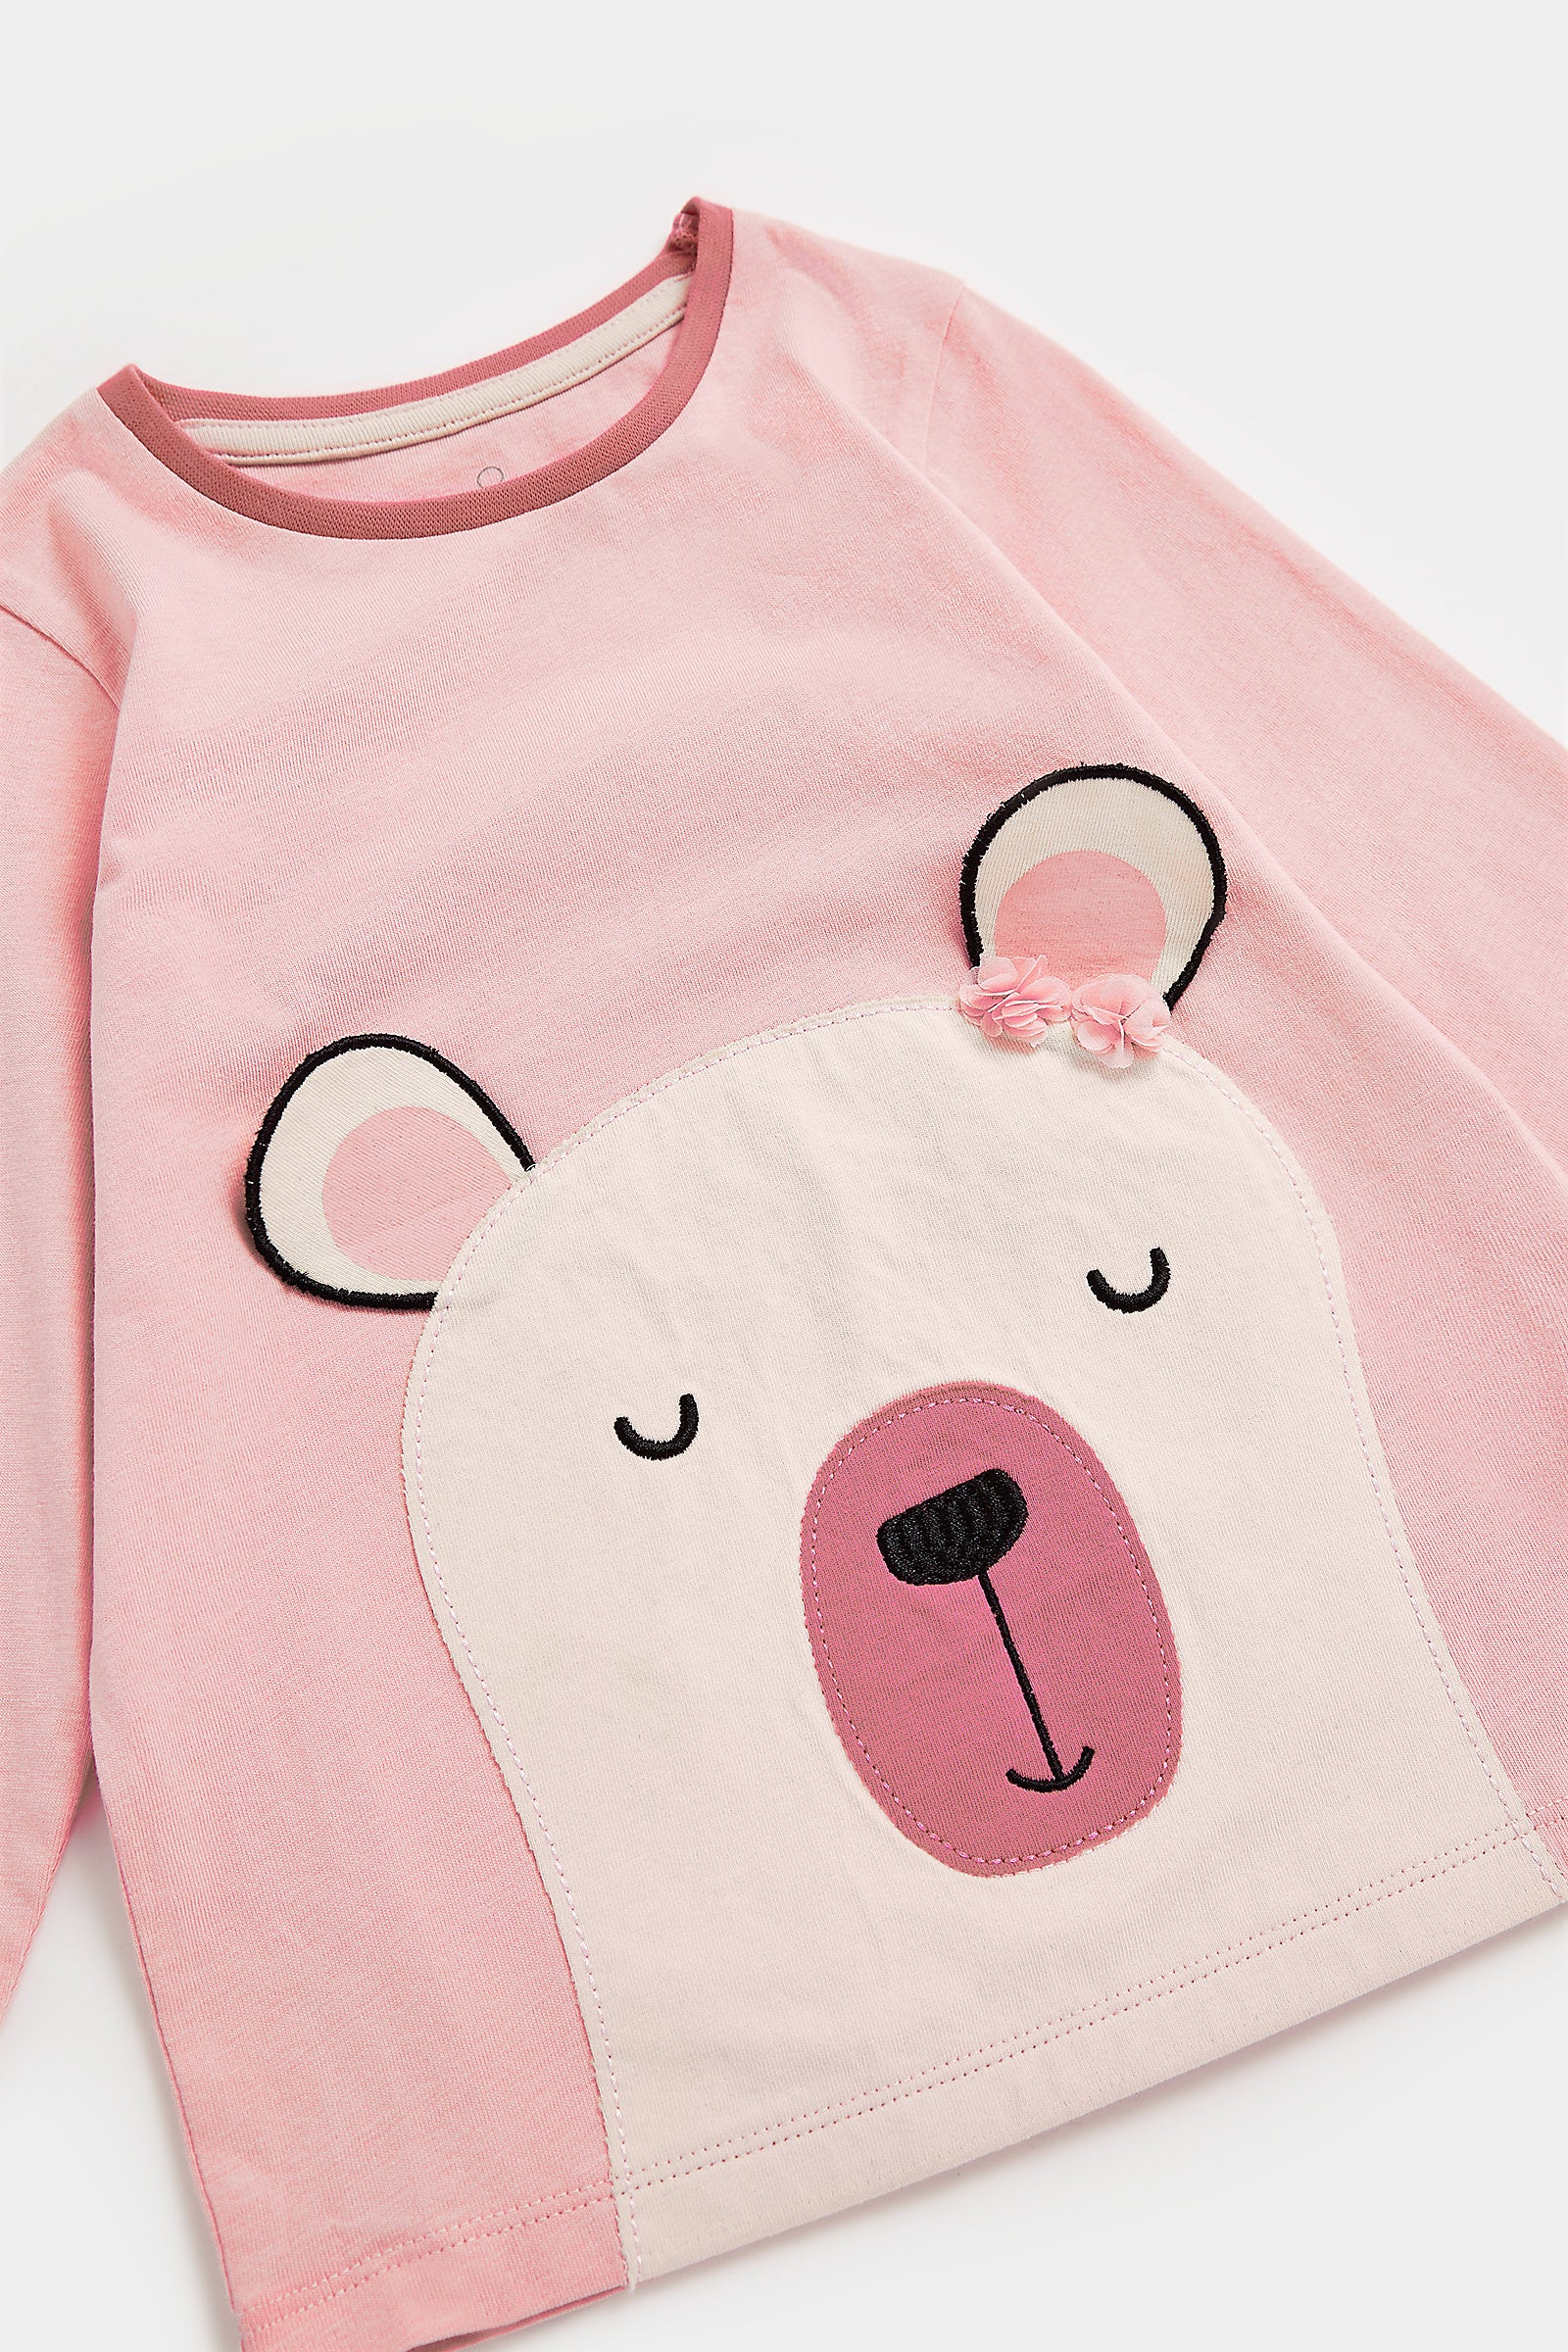 Mothercare Bear Pyjamas - 2 Pack